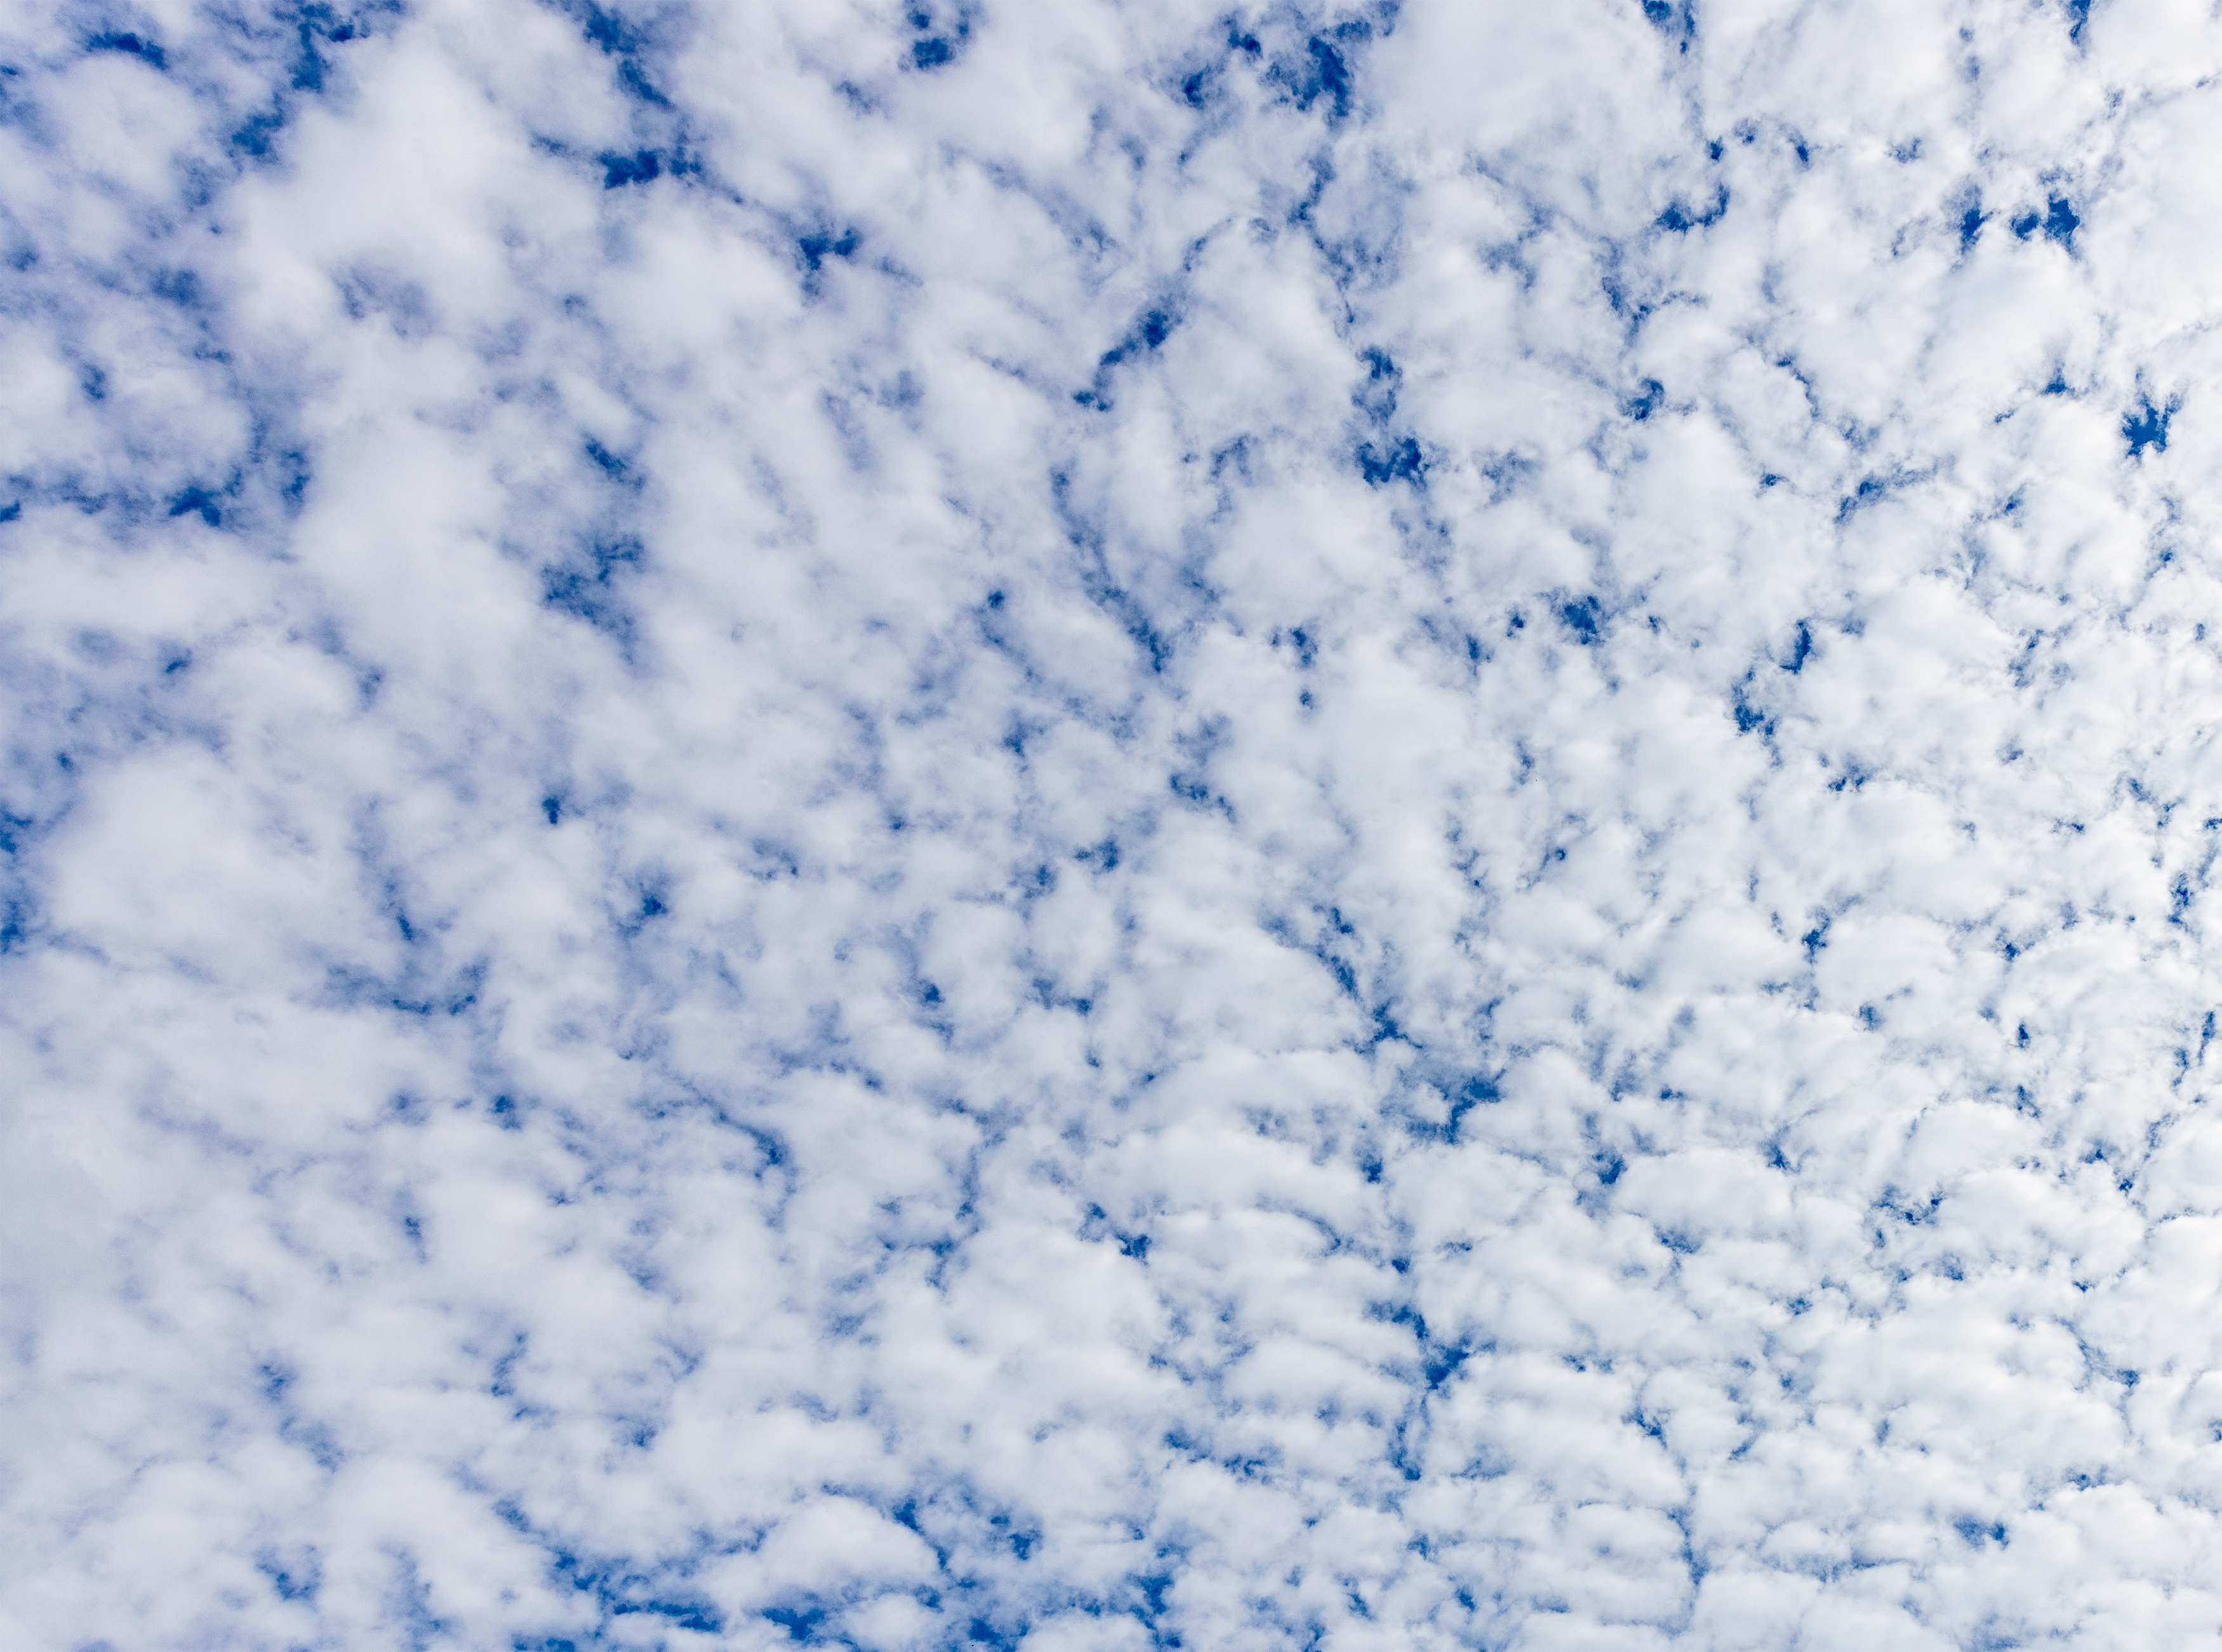 羊雲 ひつじ雲 2 無料の高画質フリー写真素材 イメージズラボ